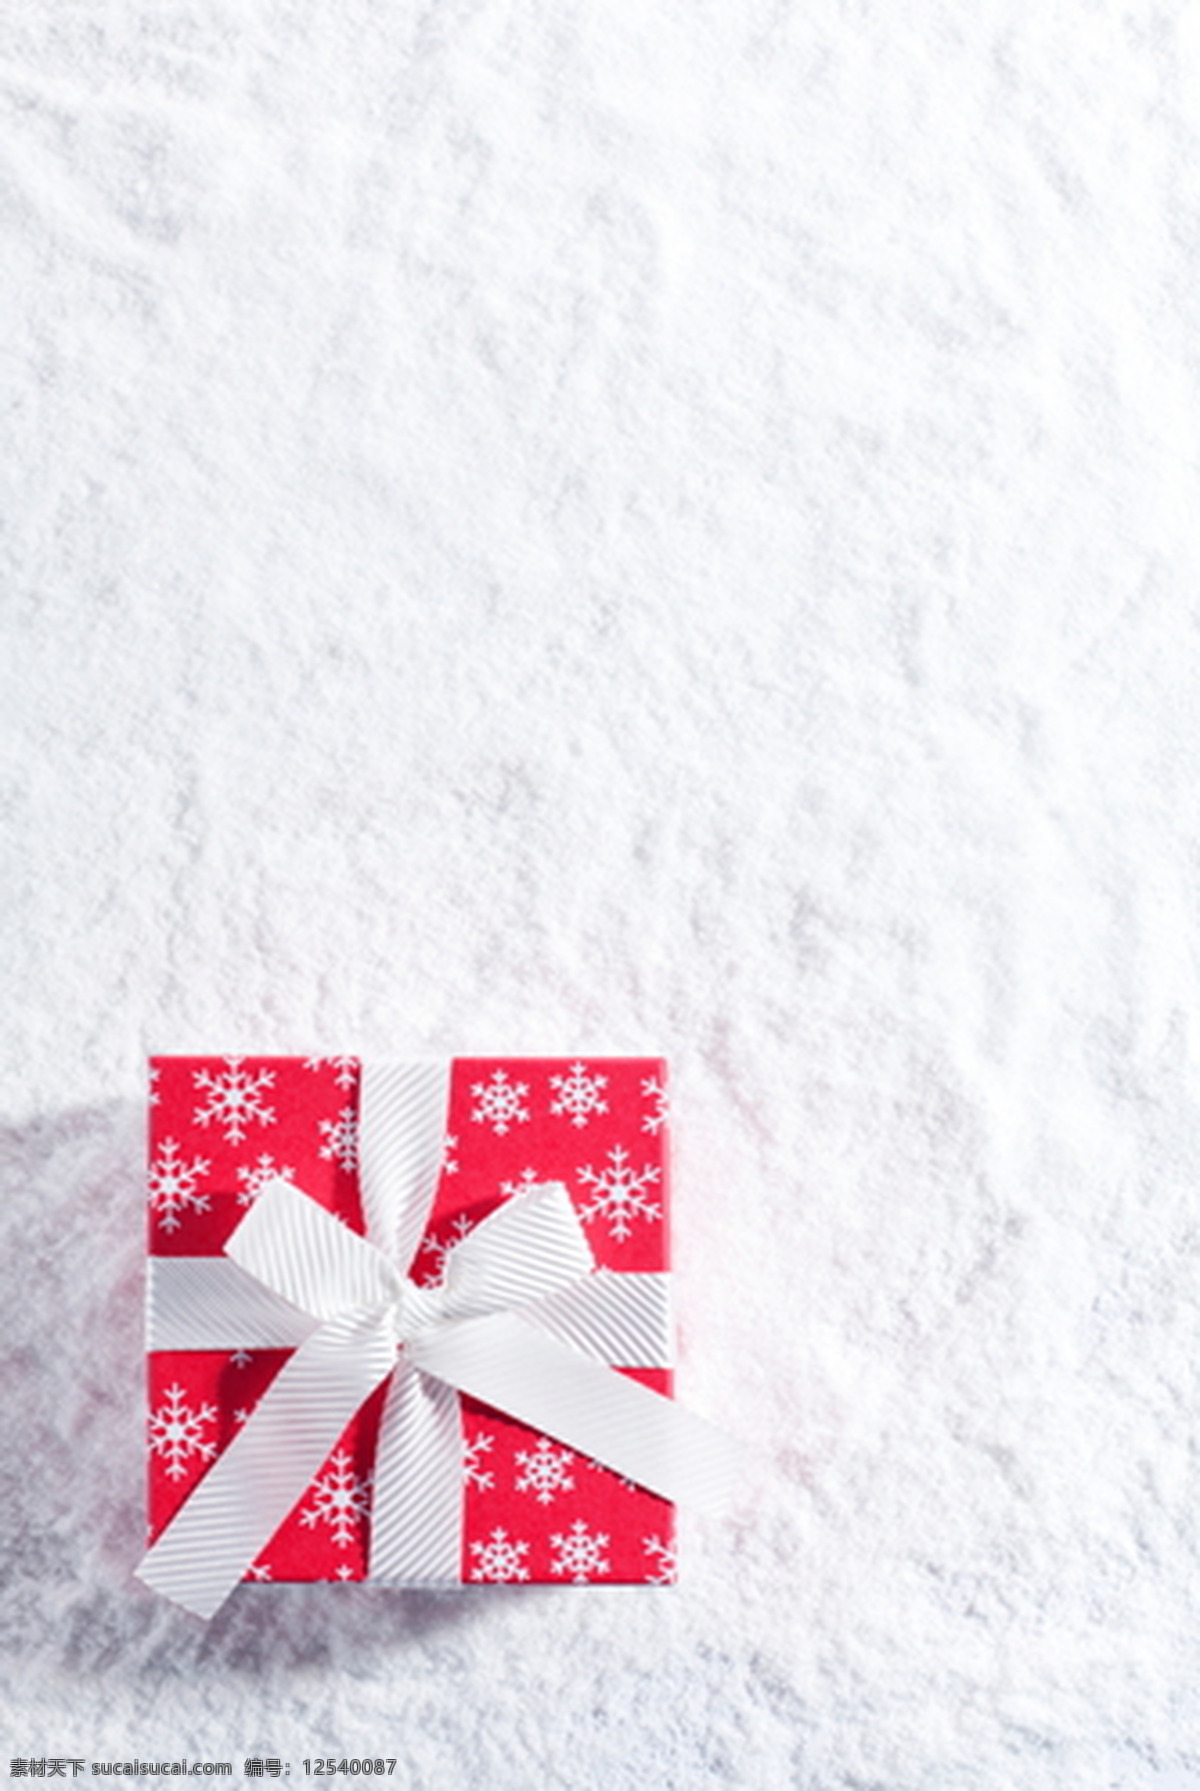 白色 雪地 上 礼物 背景 背景素材 红色 蝴蝶结 圣诞 填充背景 雪花